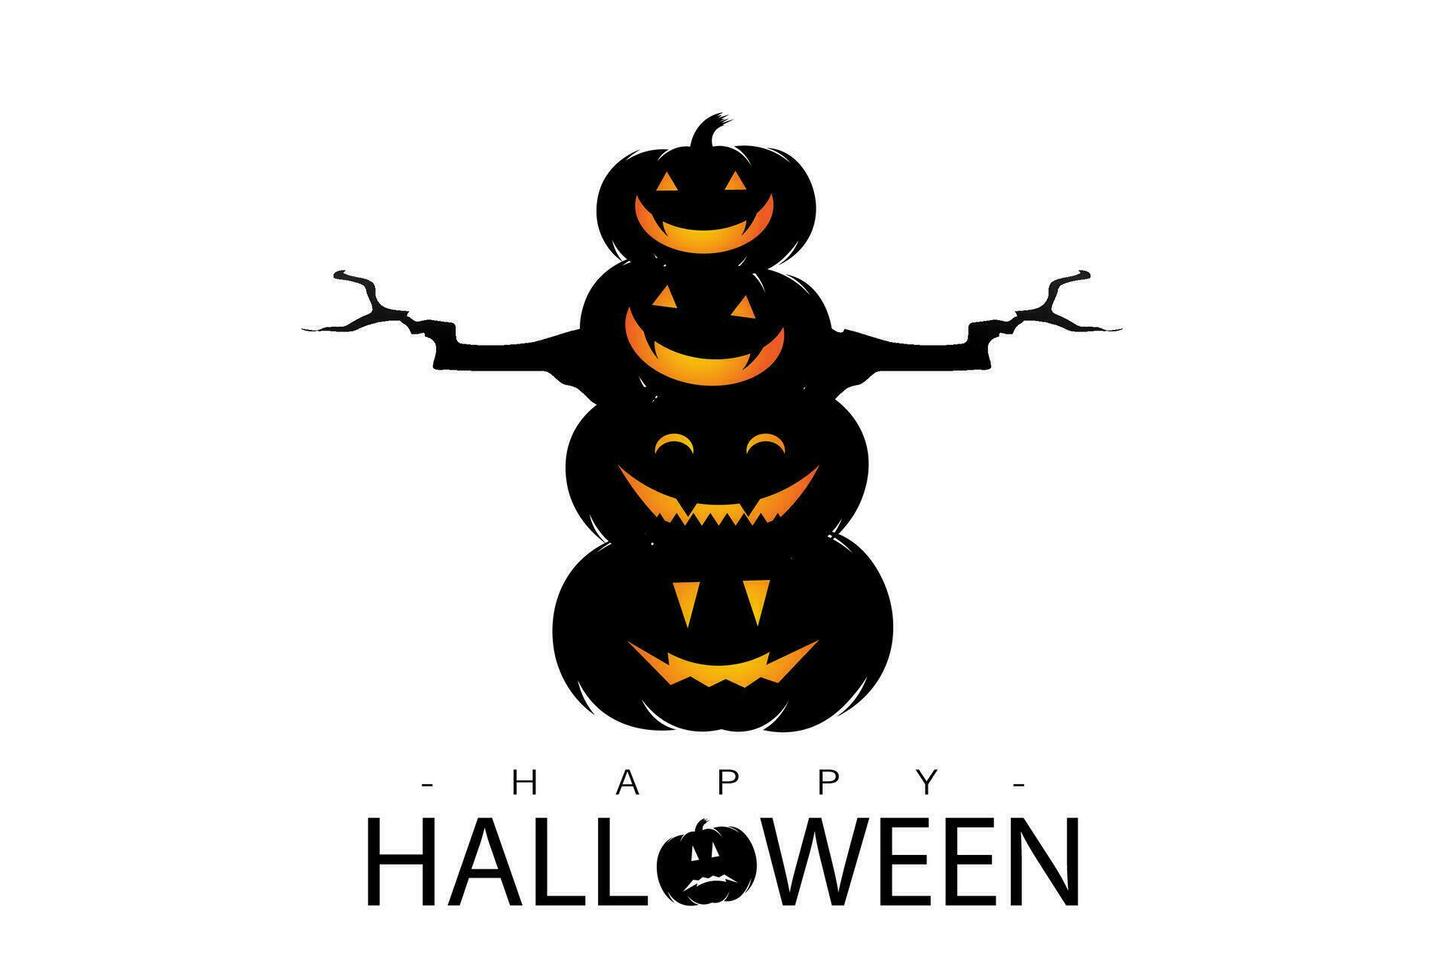 zwart pompoenen geregeld bovenstaande, perfect voor halloween pictogrammen, spookachtig themed festivals en halloween achtergronden vector